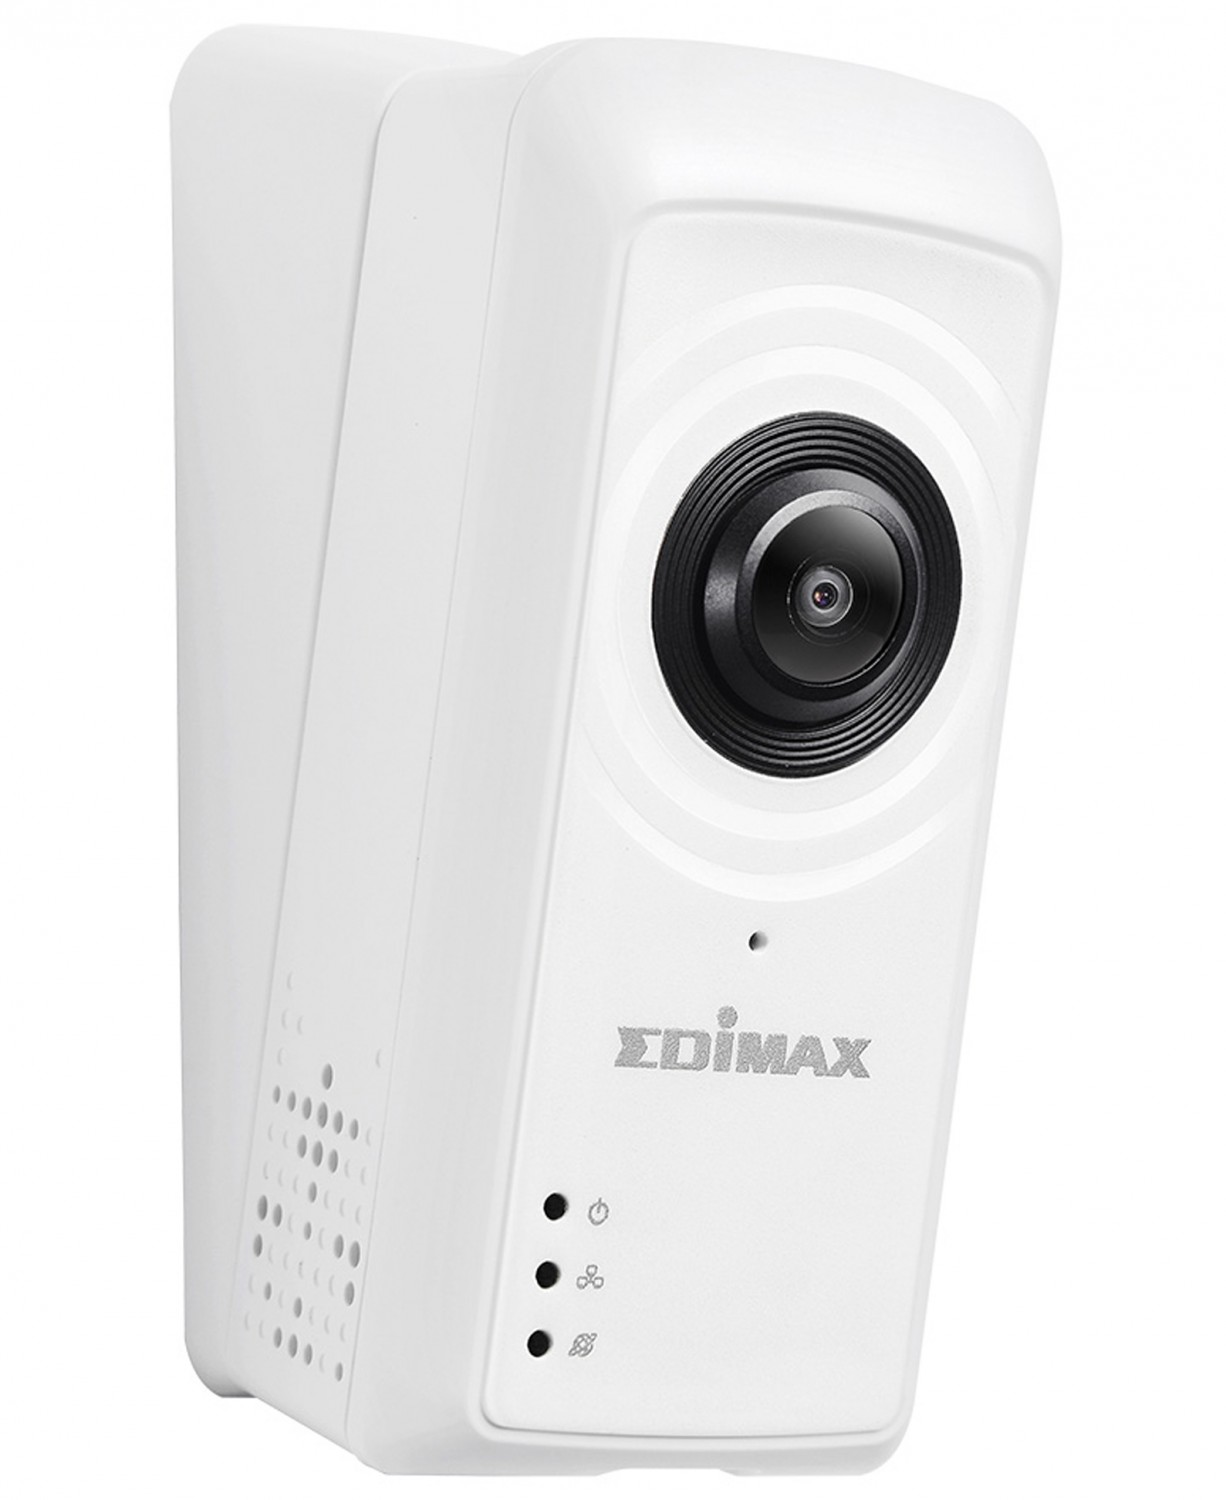 Netzwerkkamera Edimax IC-5150W im Test, Bild 1